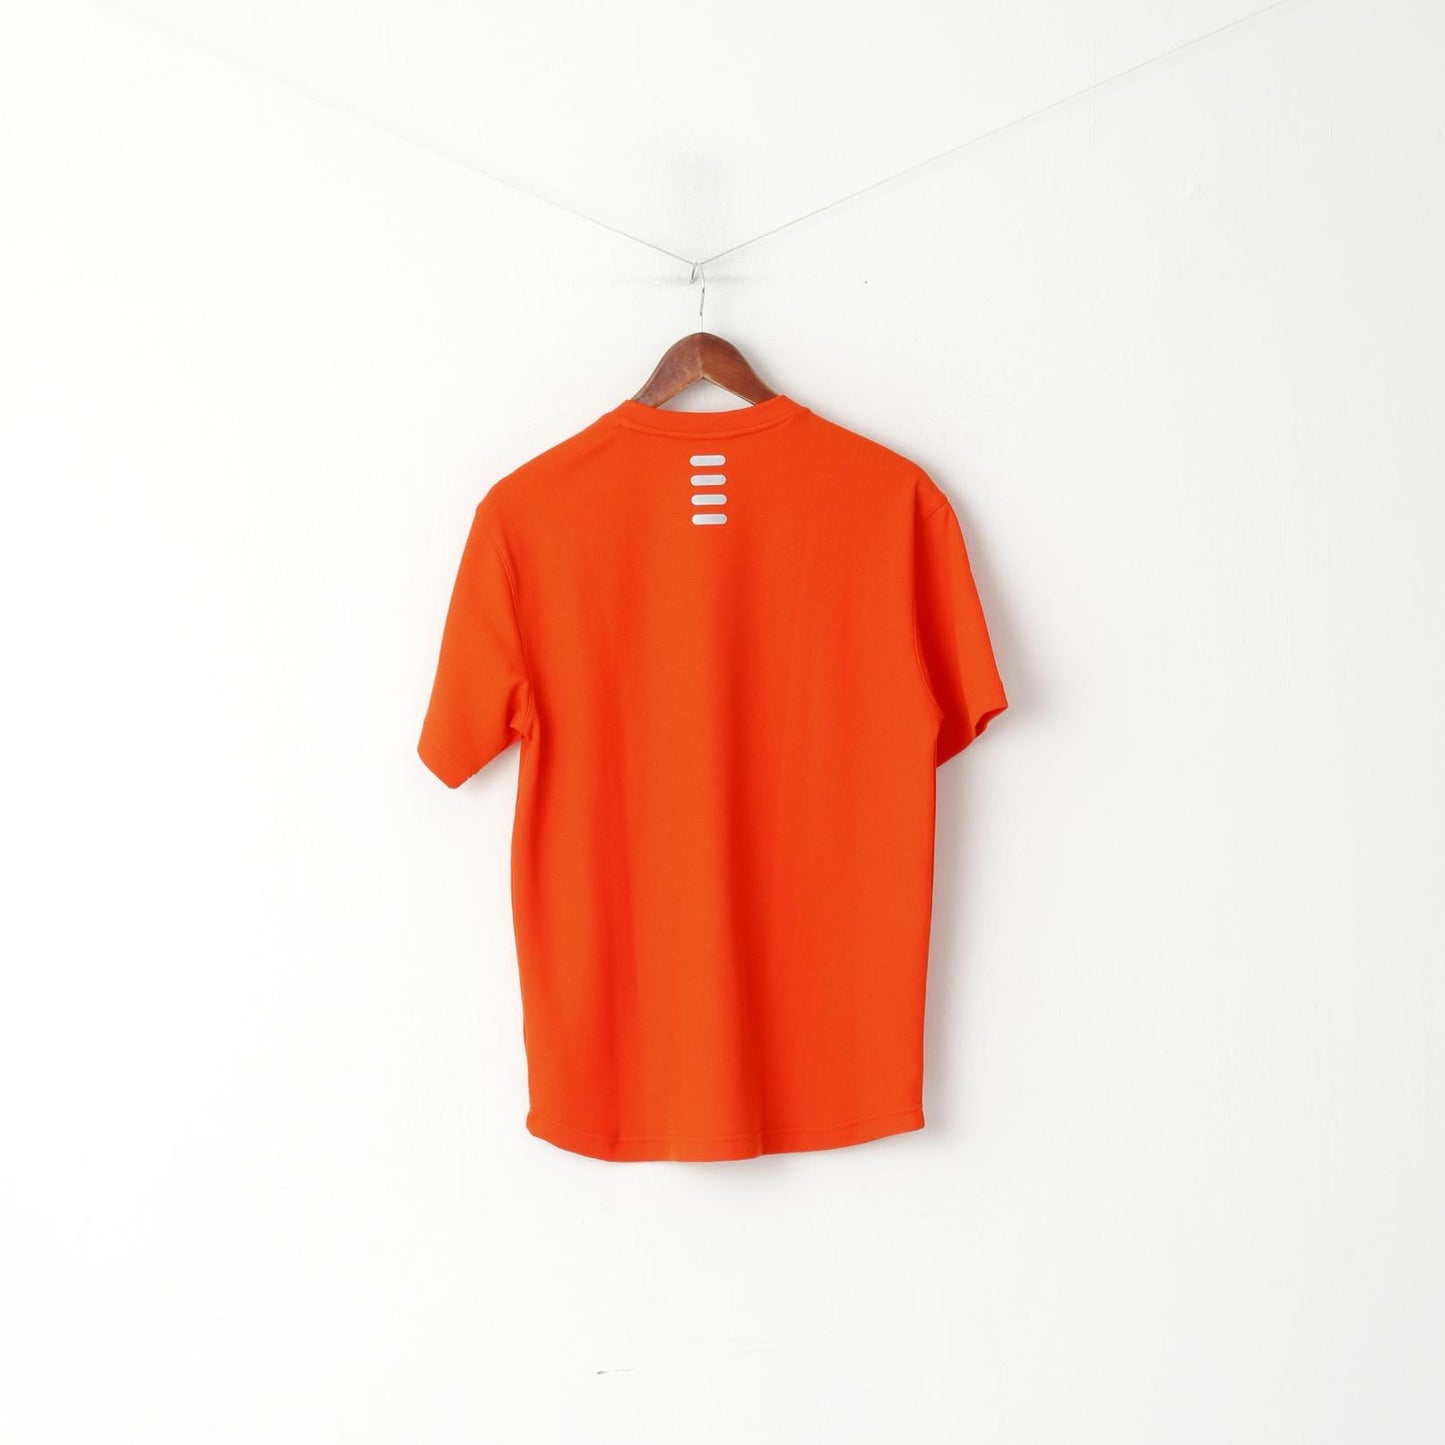 Maglia FILA da uomo 46/48 S arancione Performa con scollo a V, abbigliamento sportivo, top in jersey tinta unita